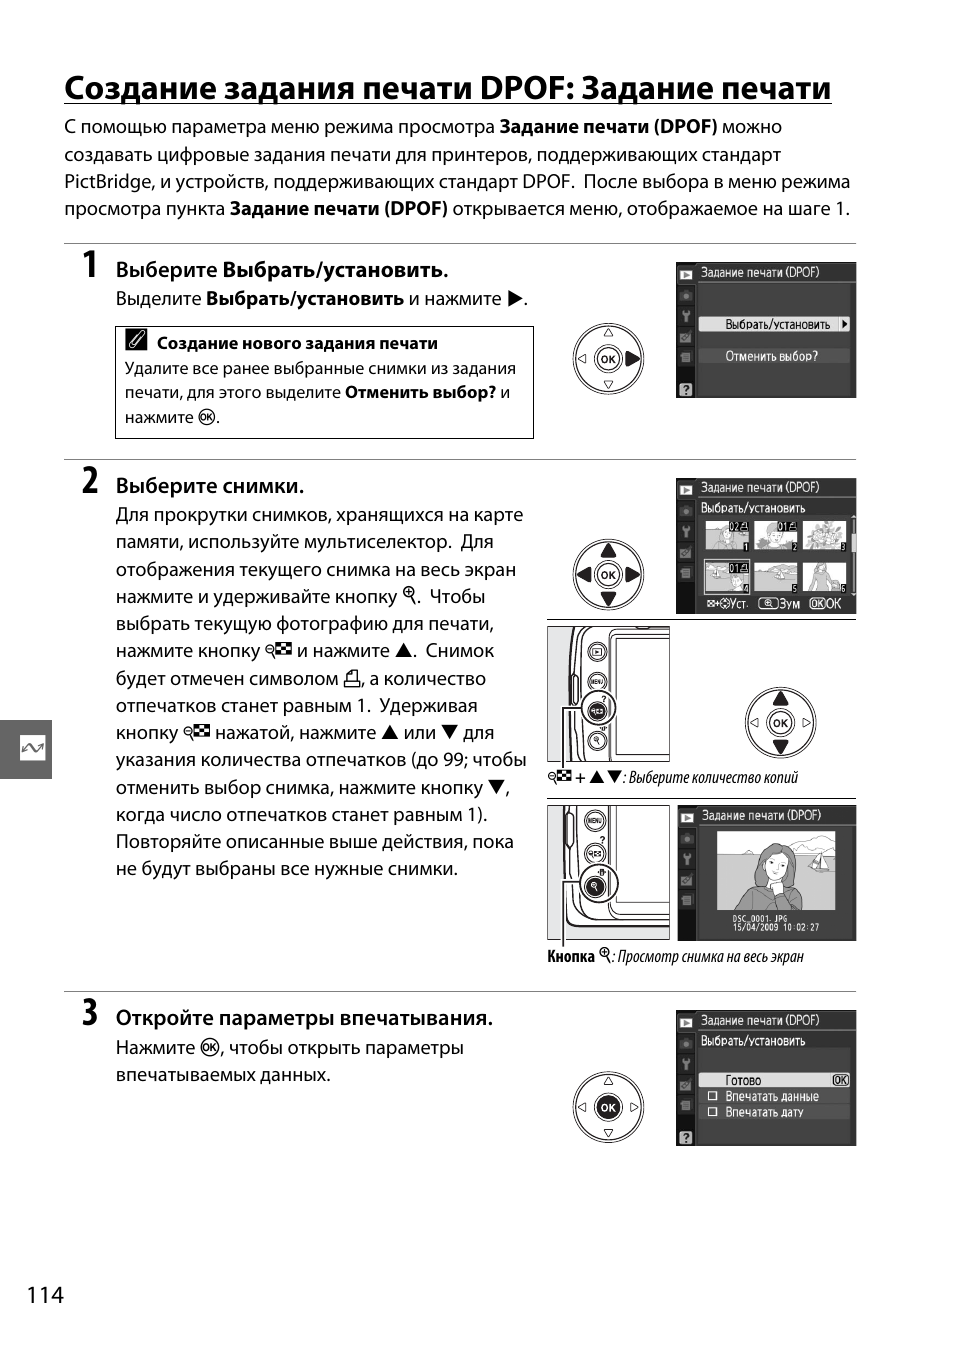 Создание задания печати dpof: задание печати | Инструкция по эксплуатации Nikon D3000 | Страница 132 / 216